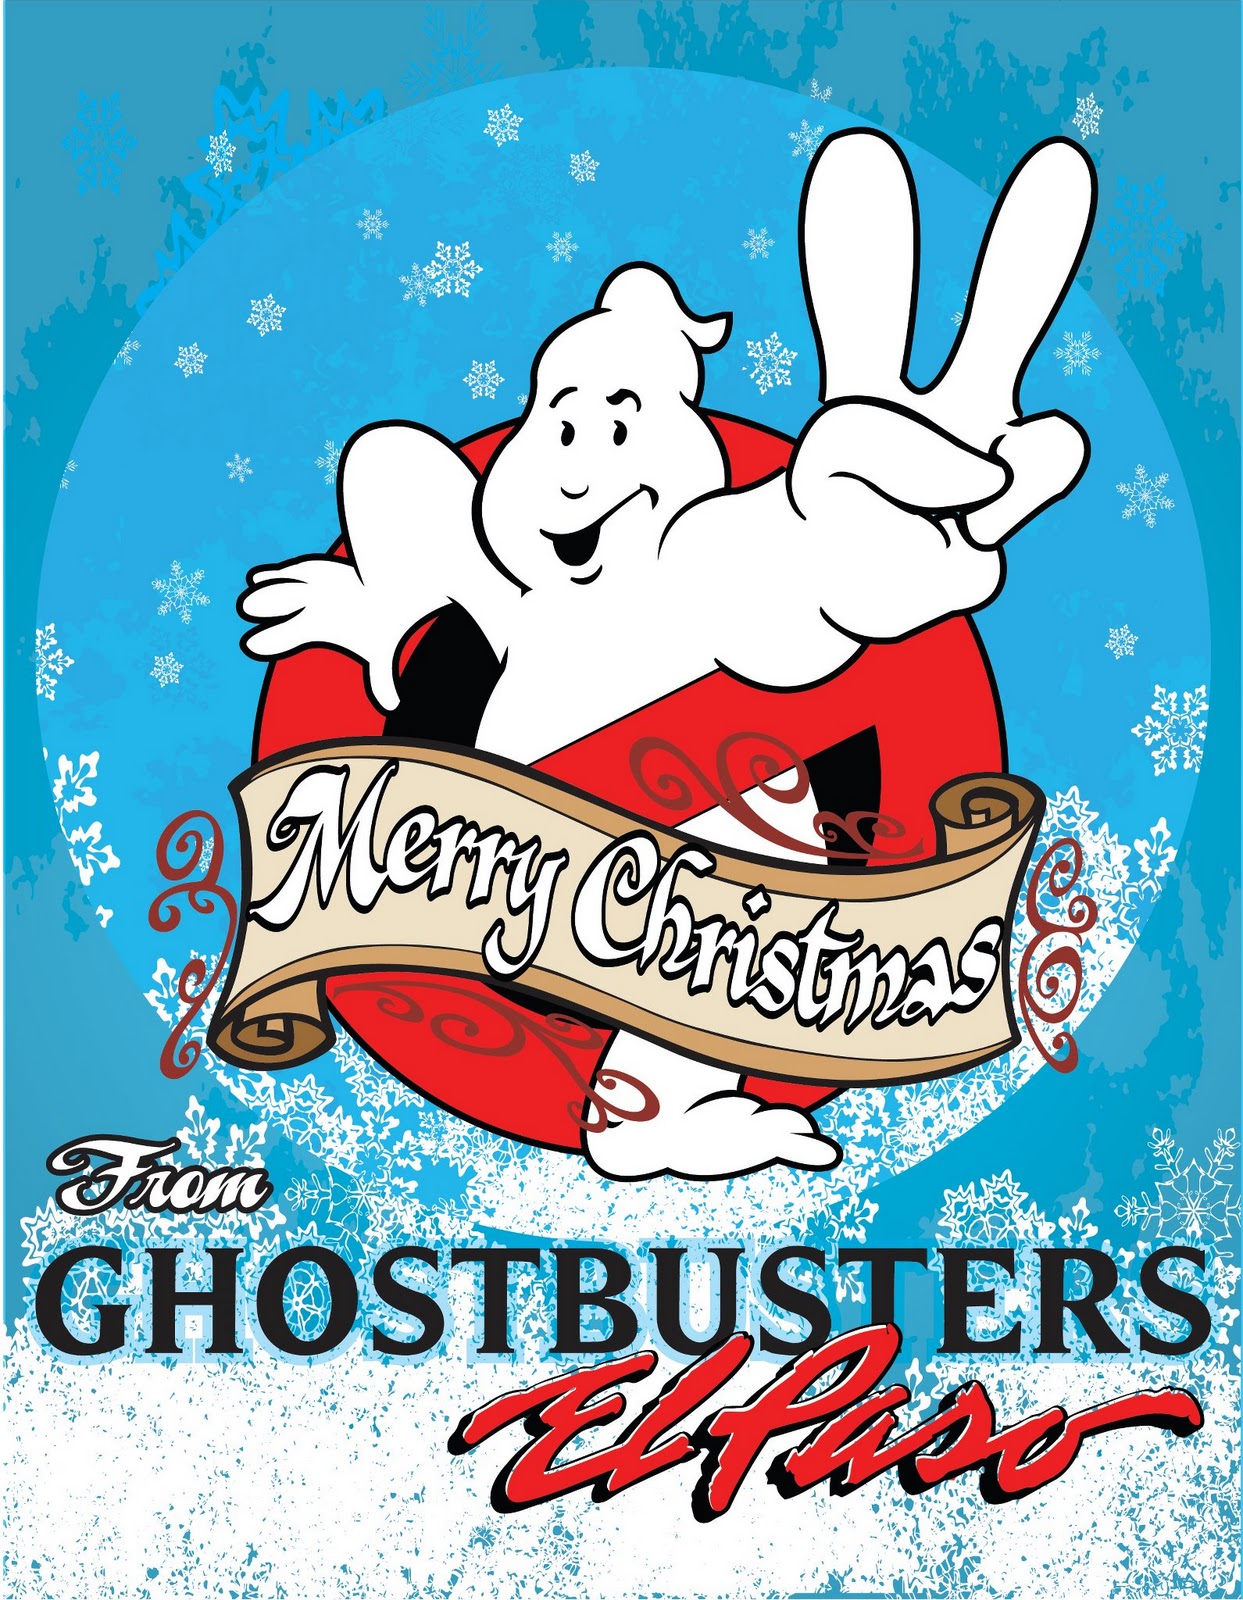 Fan Art: Christmas Card by El Paso Ghostbusters.